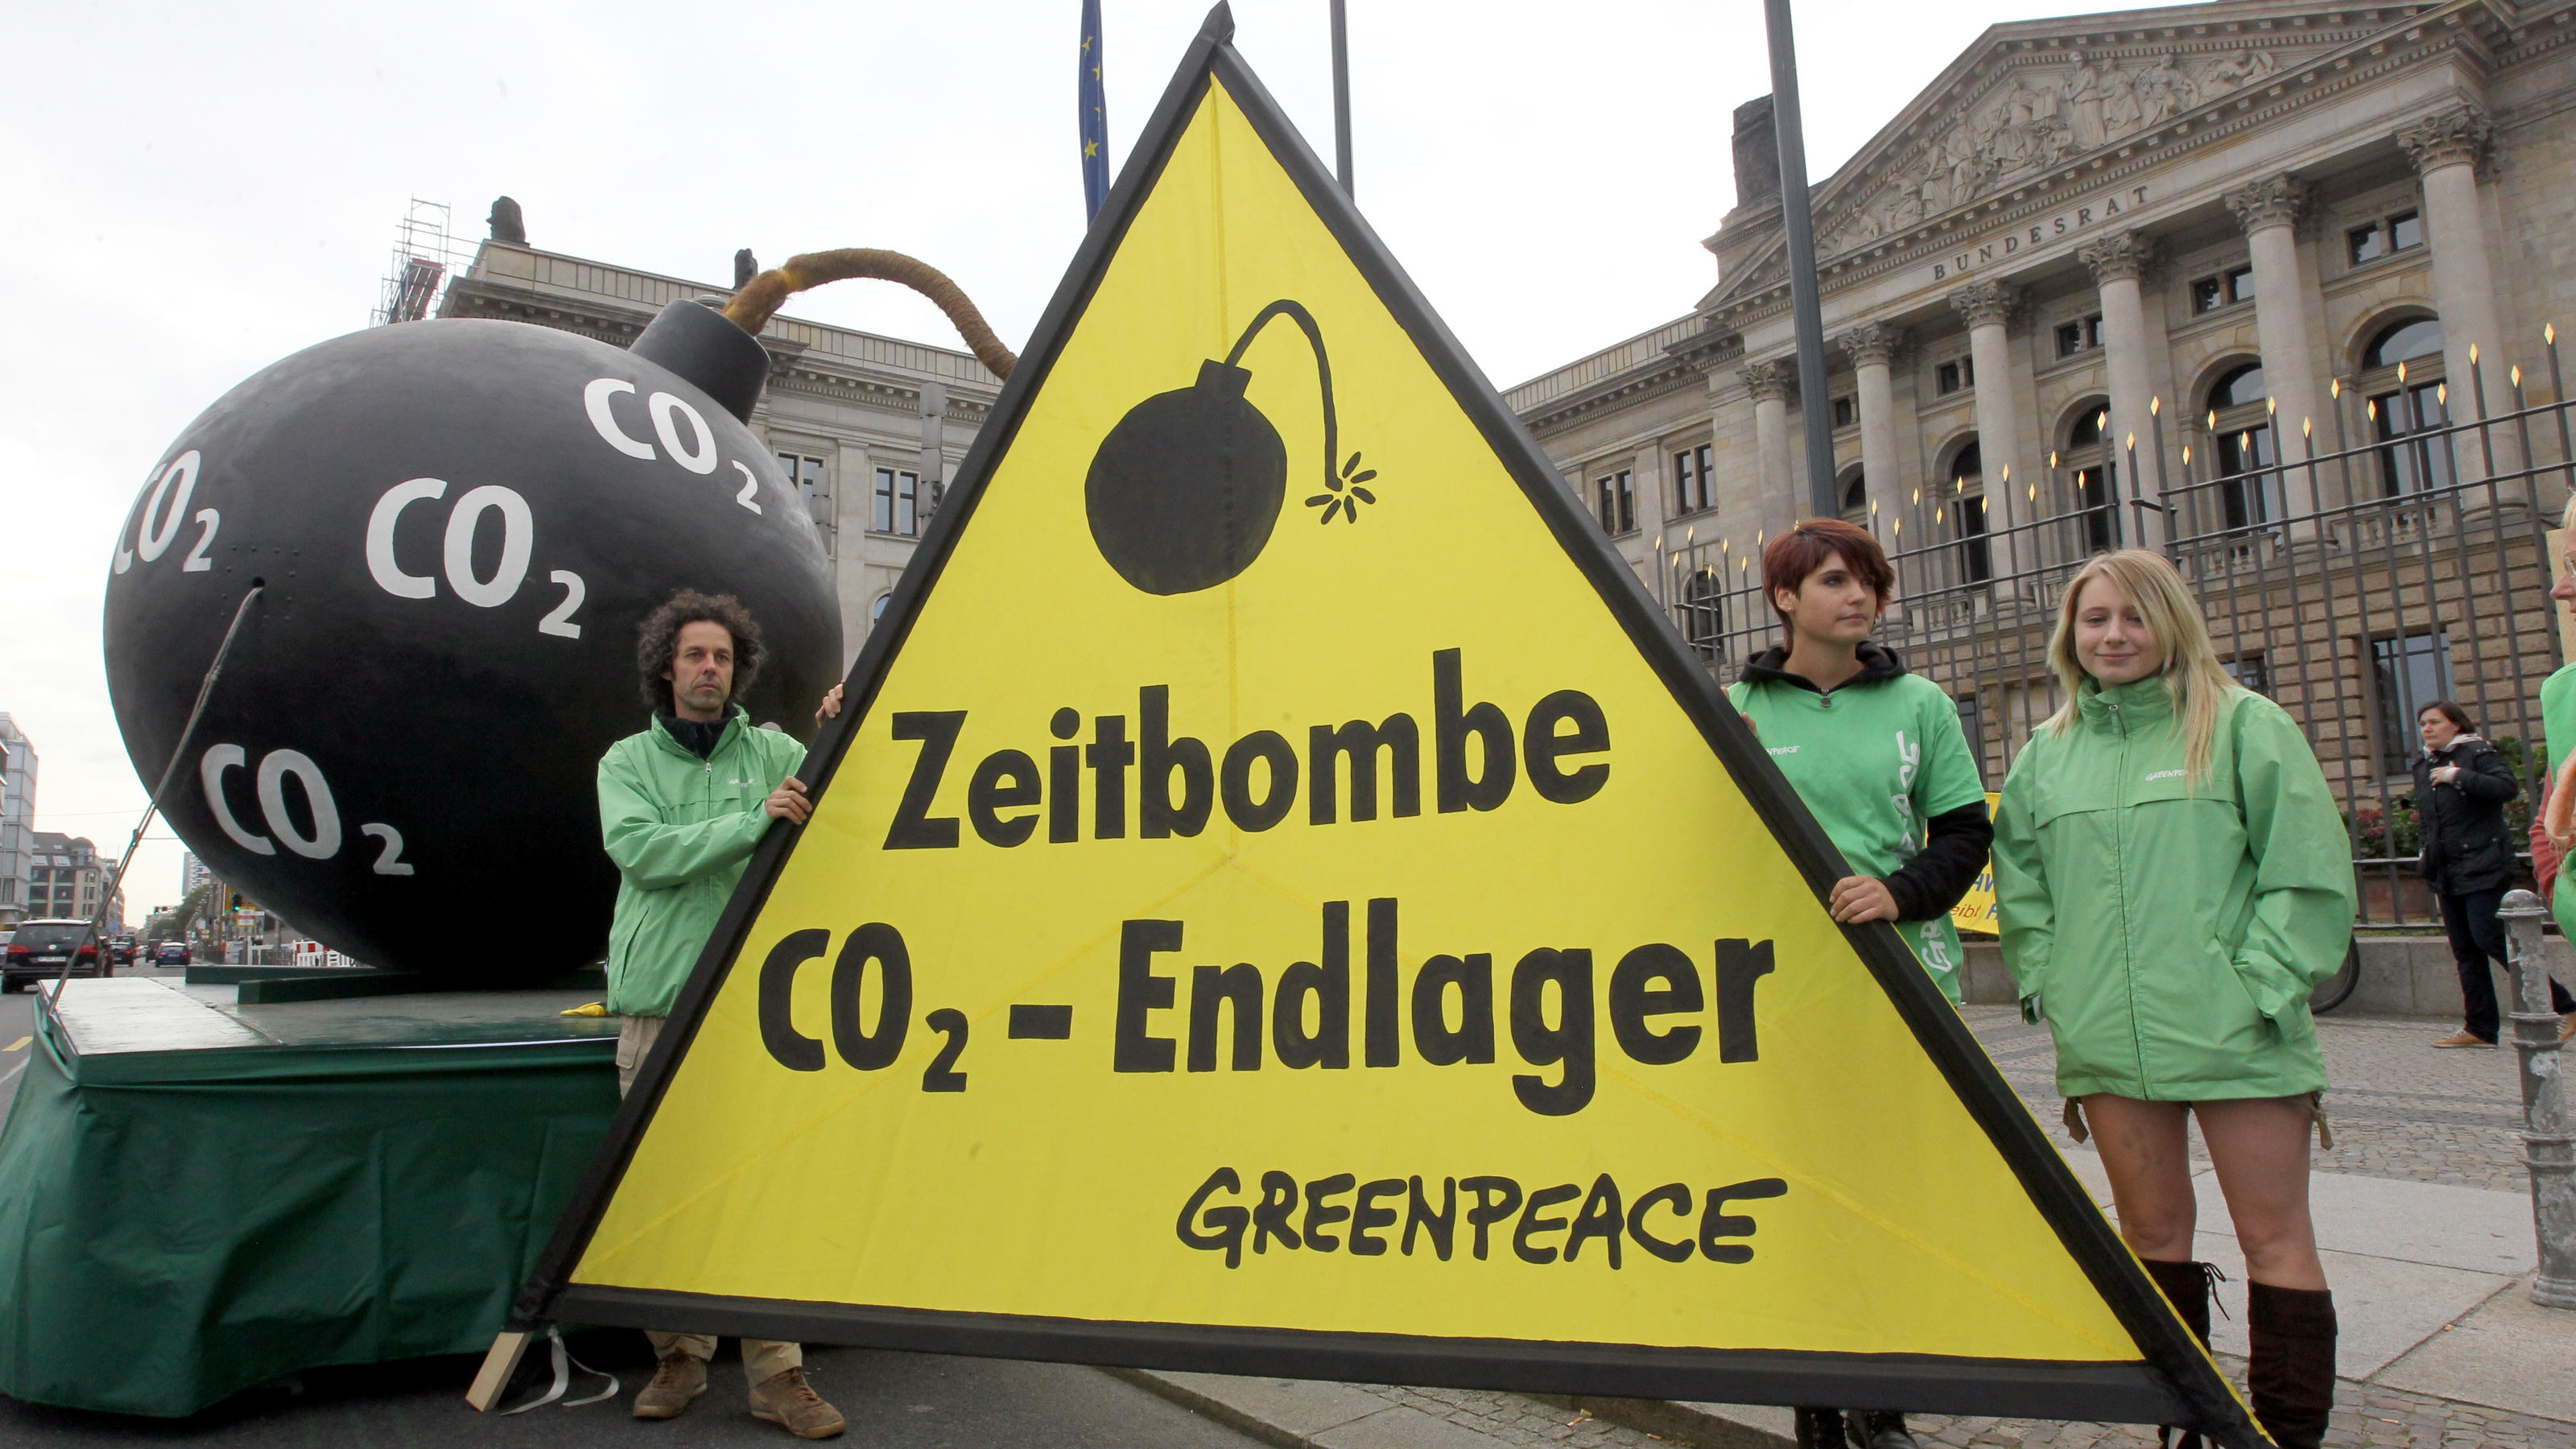 Umweltaktivisten von Greenpeace demonstrieren am Freitag (23.09.2011) vor dem Bundesrat in Berlin gegen CO2-Endlager in Deutschland. Der Bundesrat berät am Freitag u.a. über Käfighaltung bei Legehennen und über Kohlendioxid-Verpressung (CCS-Gesetz). 